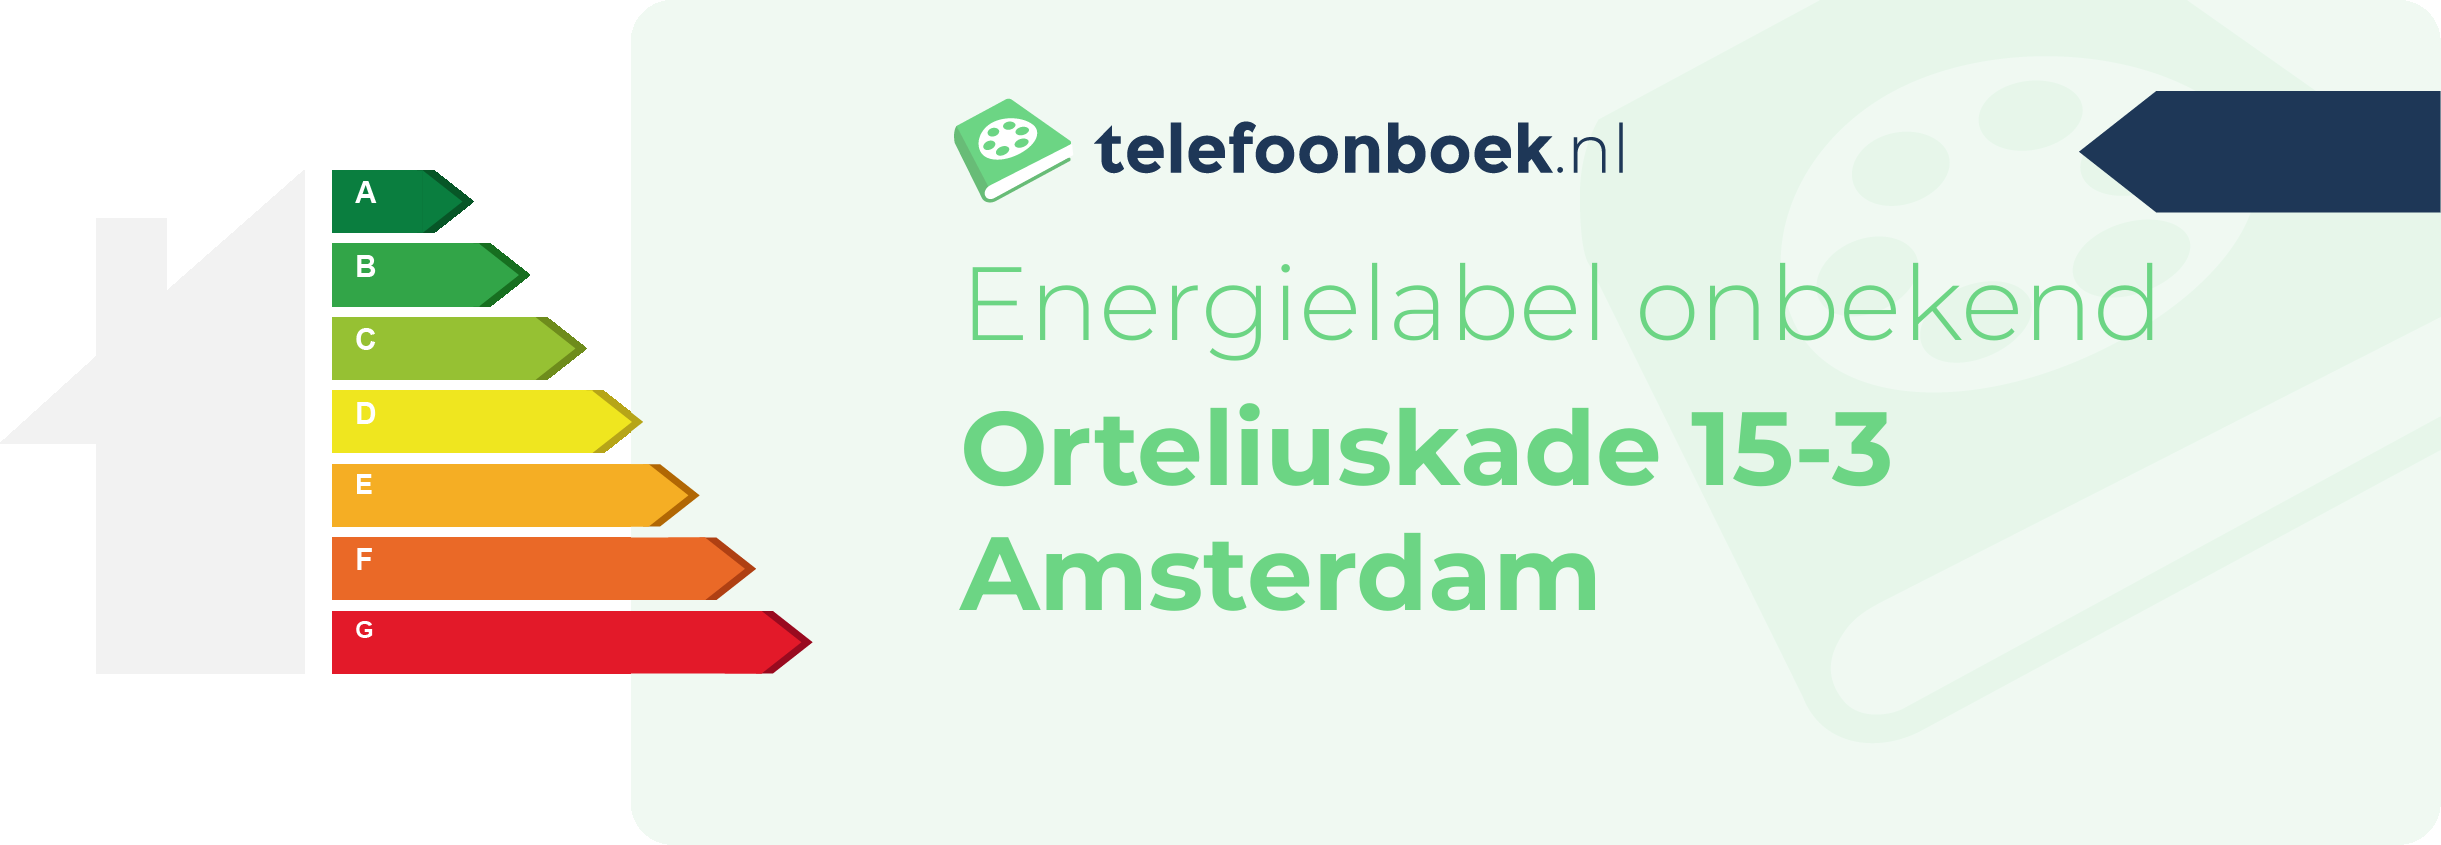 Energielabel Orteliuskade 15-3 Amsterdam